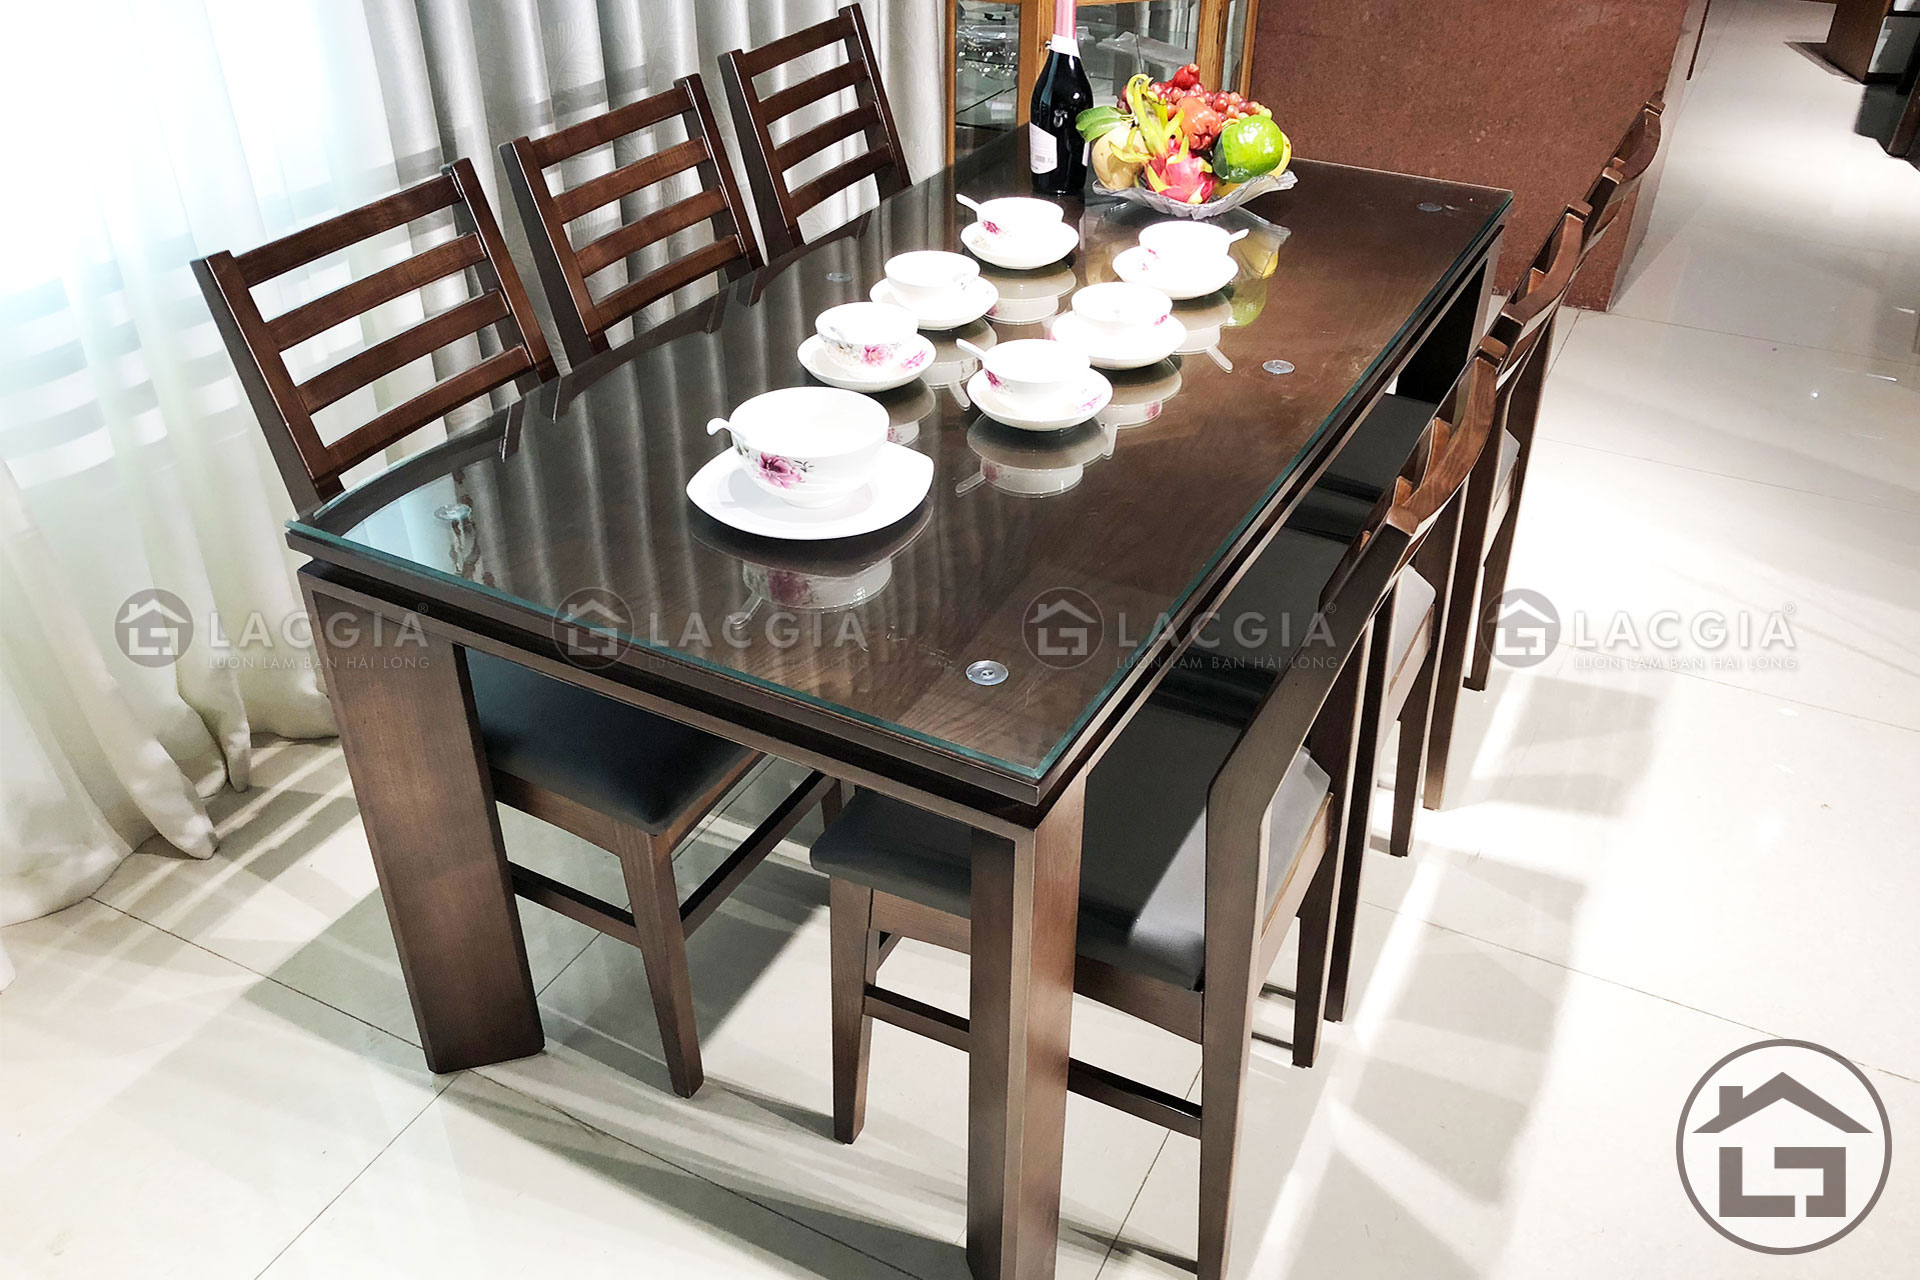 7 1 - Những mẫu bàn ăn gỗ hiện đại cho không gian phòng bếp đẹp